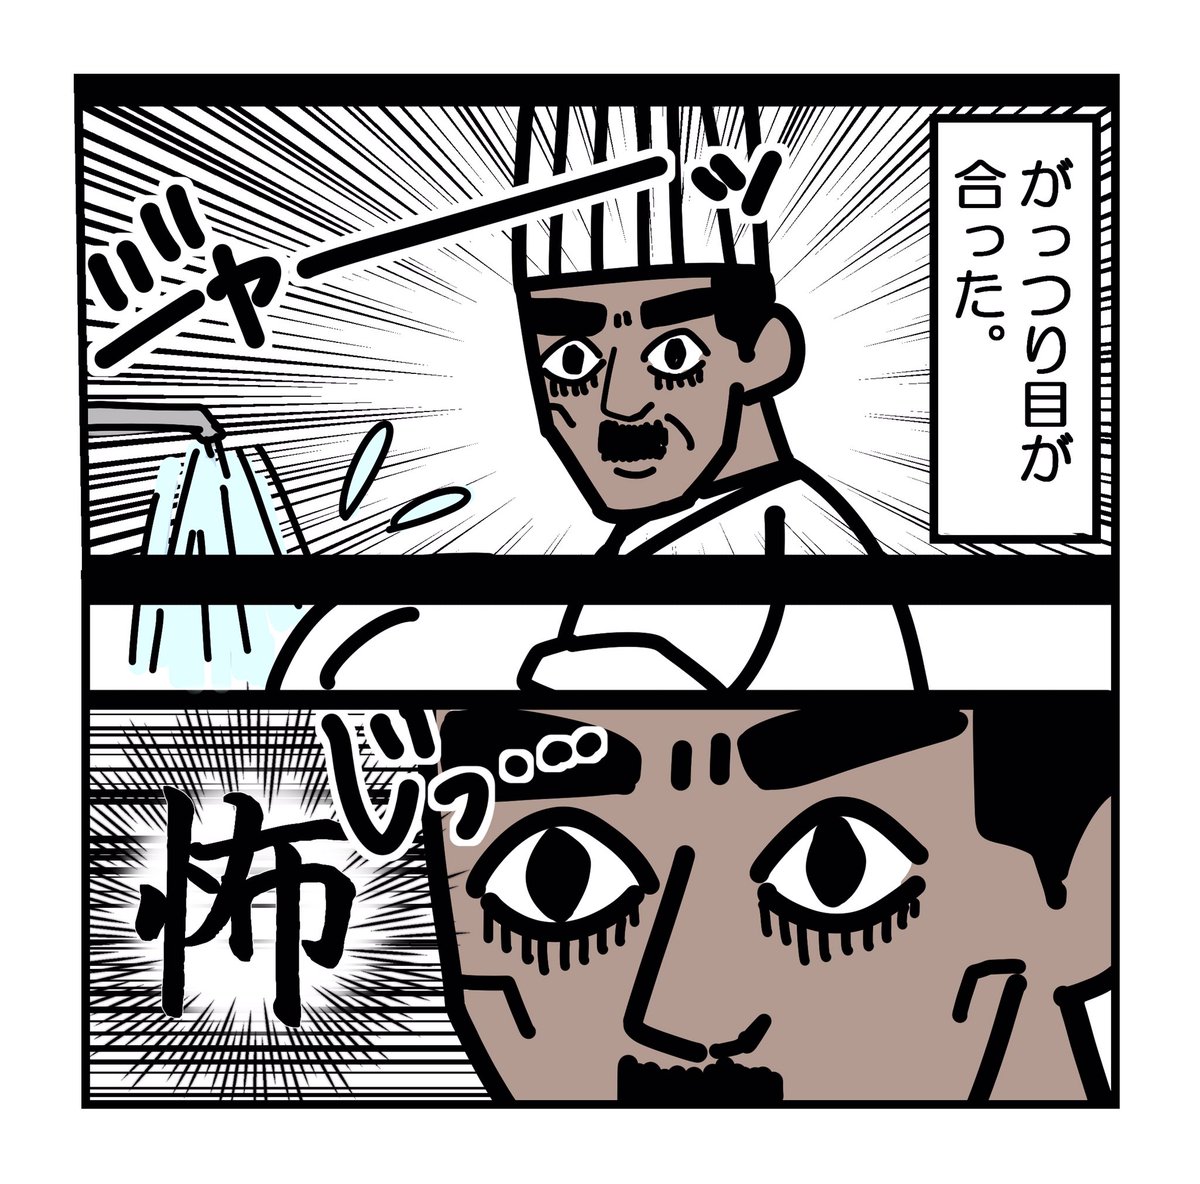 日常漫画:フードコートで思うこと - かるメディア https://t.co/VJ5Zk55By0  #かるめ漫画 